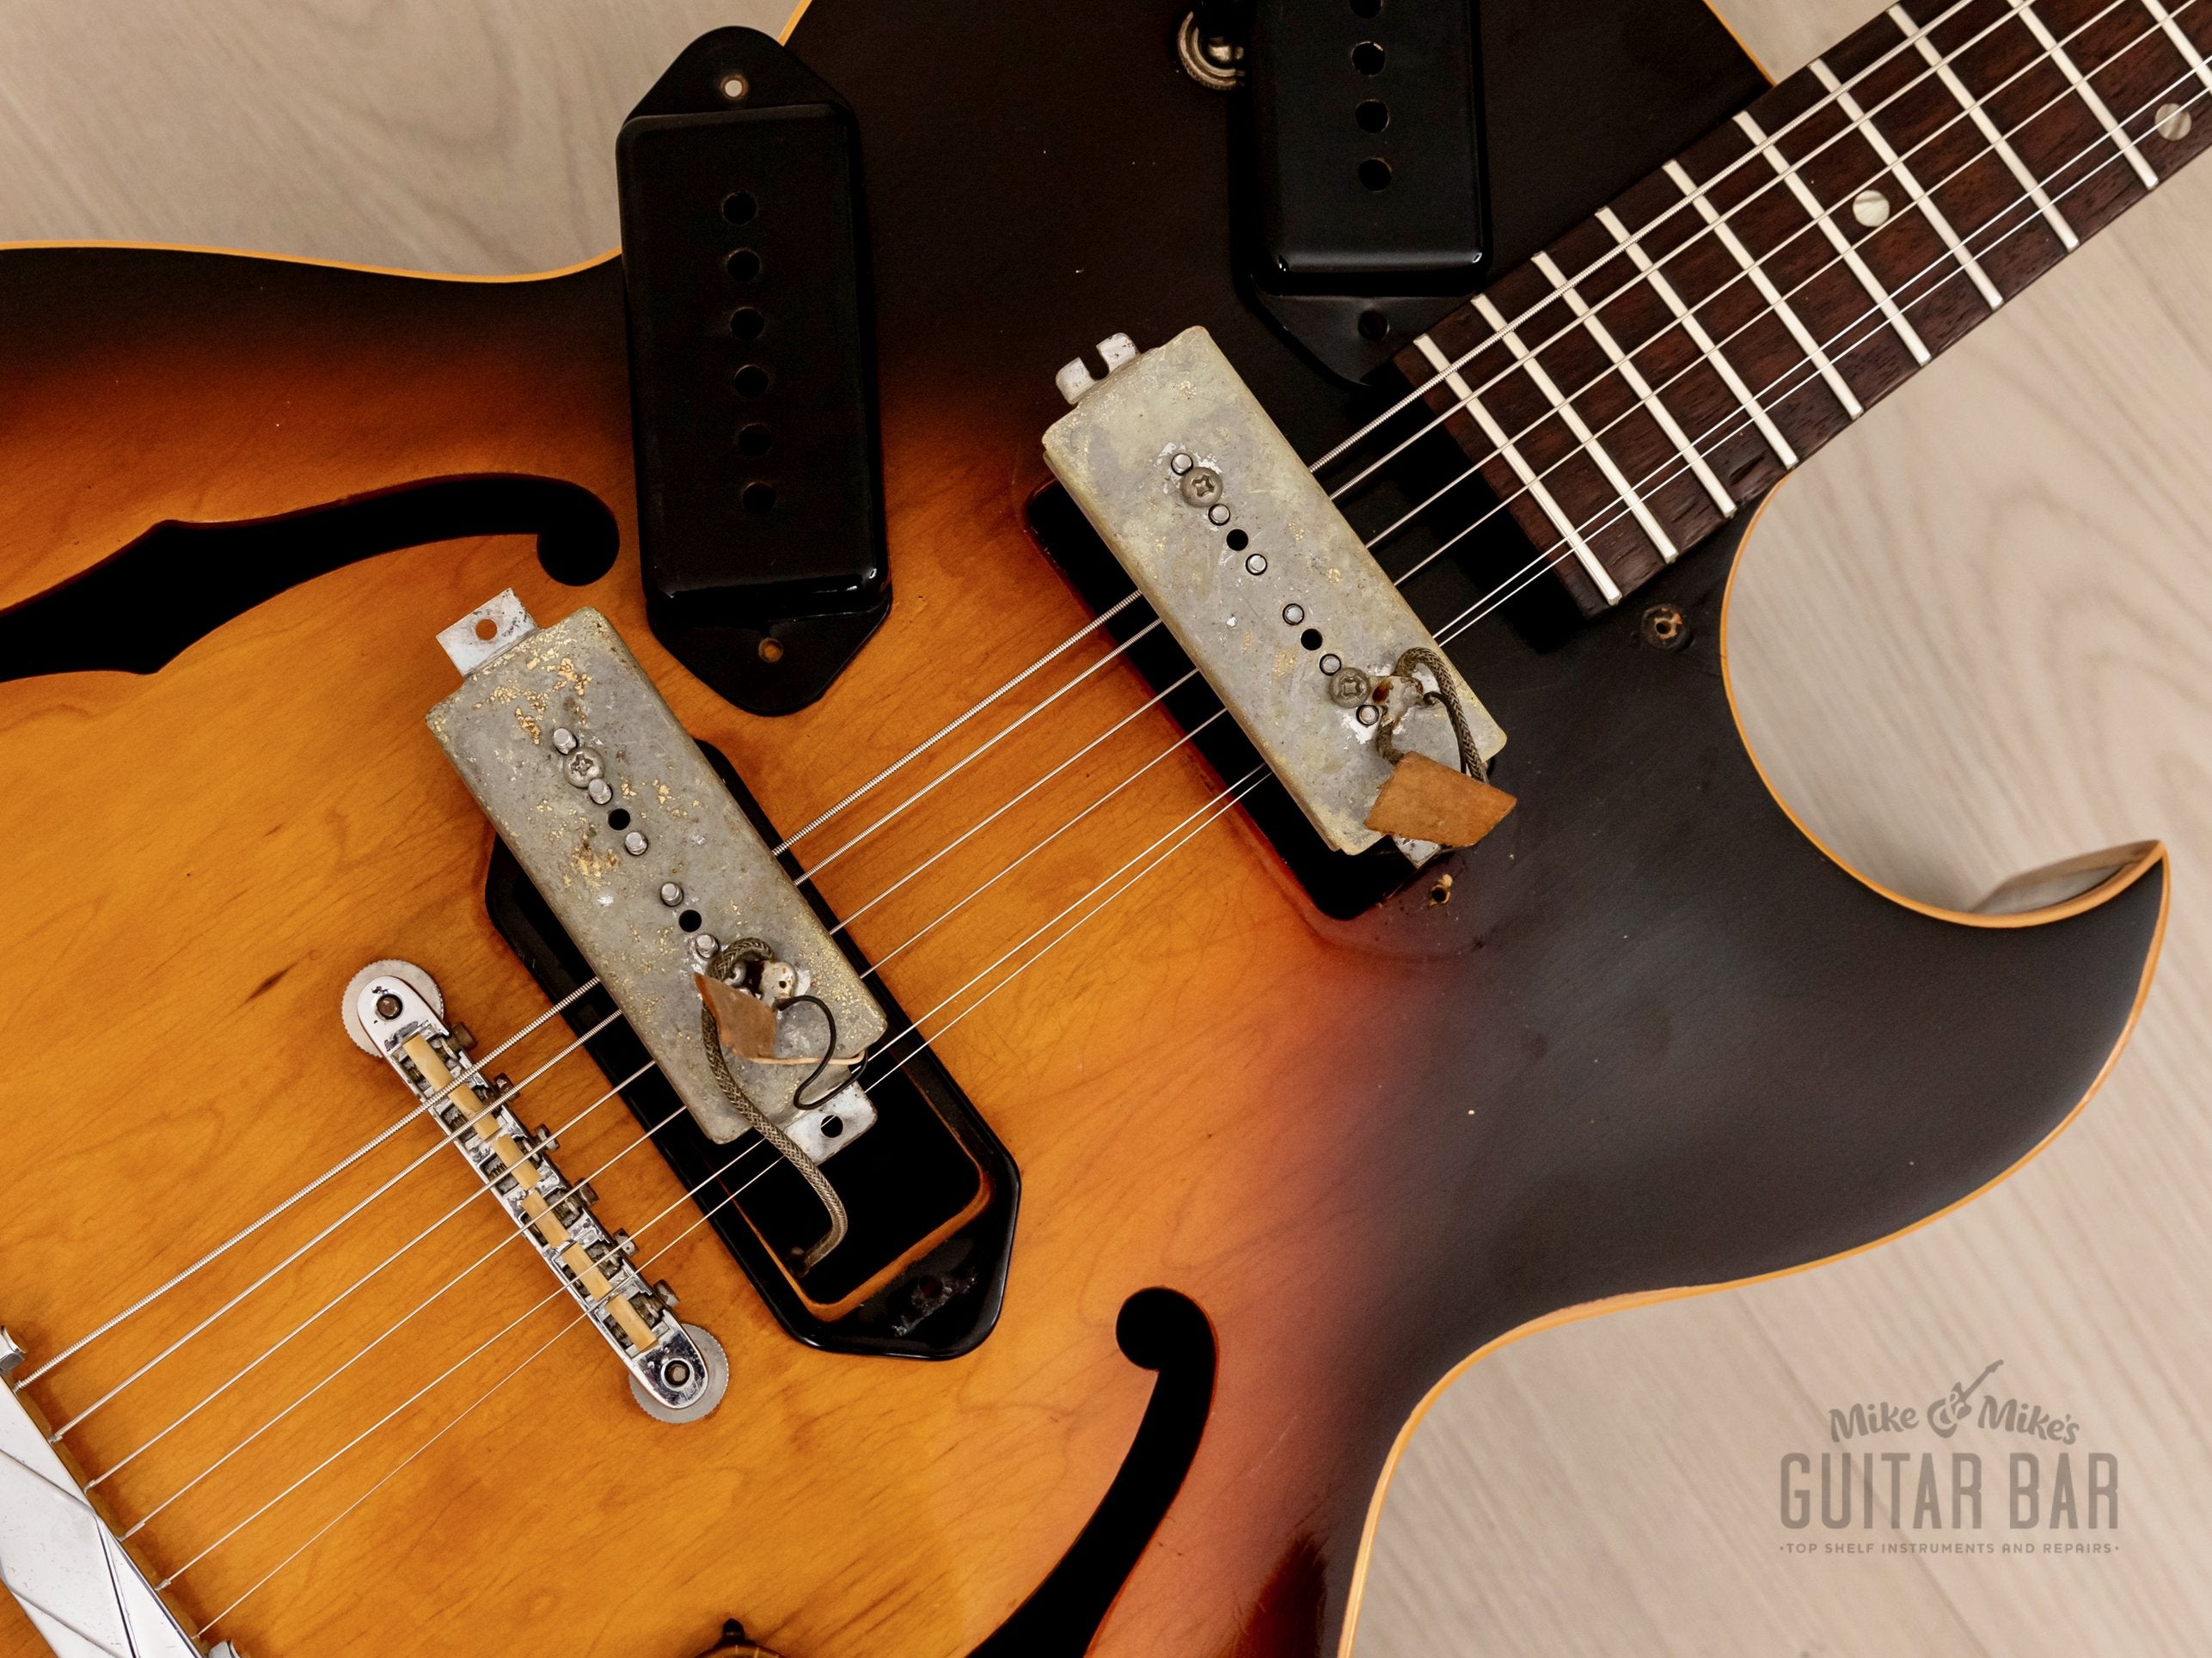 1965 Gibson ES-125 DC Cutaway Vintage Archtop Guitar Sunburst w/ P-90s, Case